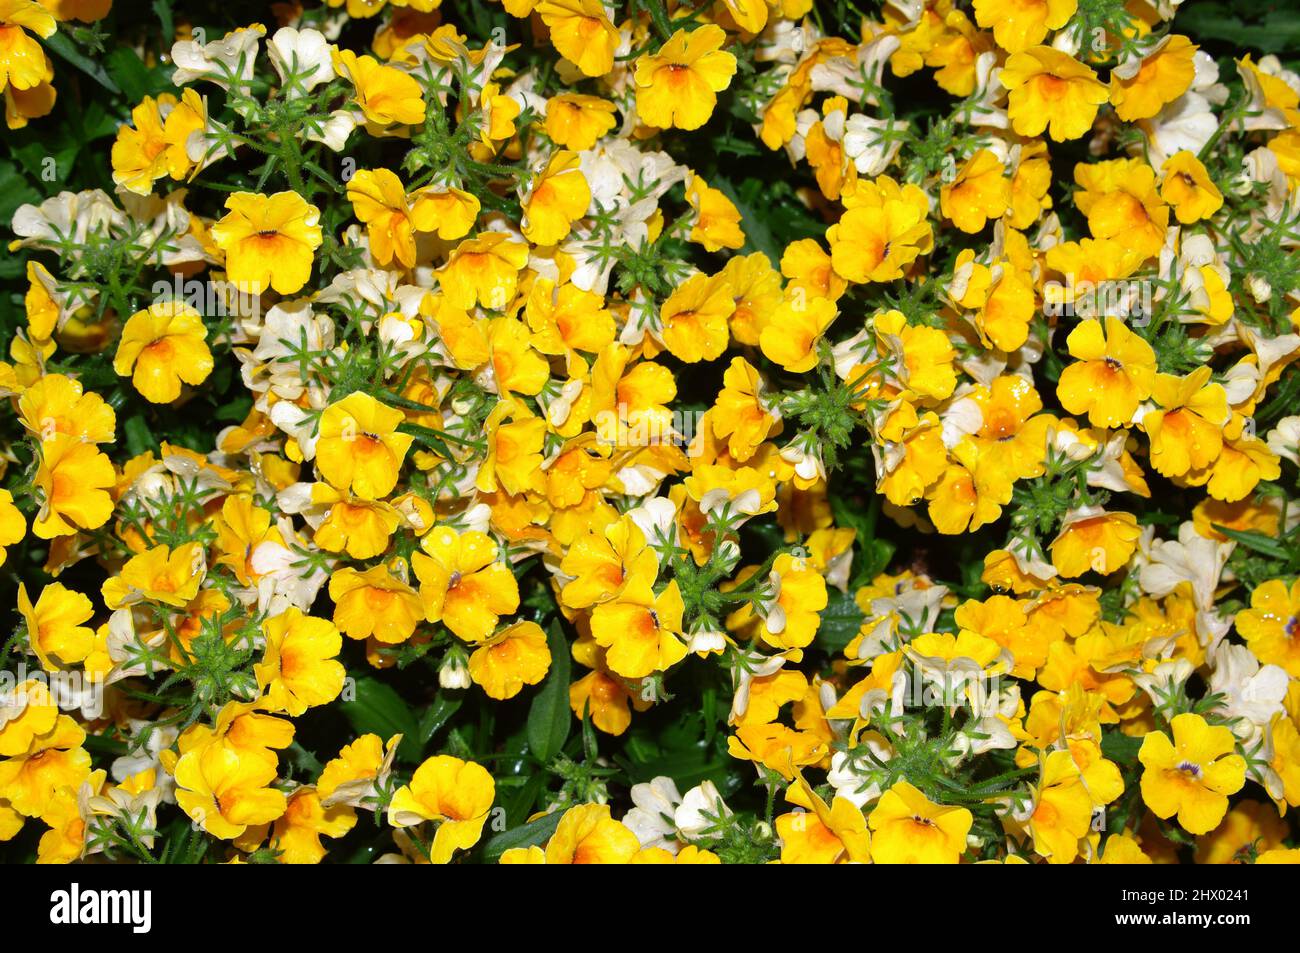 Yellow ranunculus close-up Stock Photo